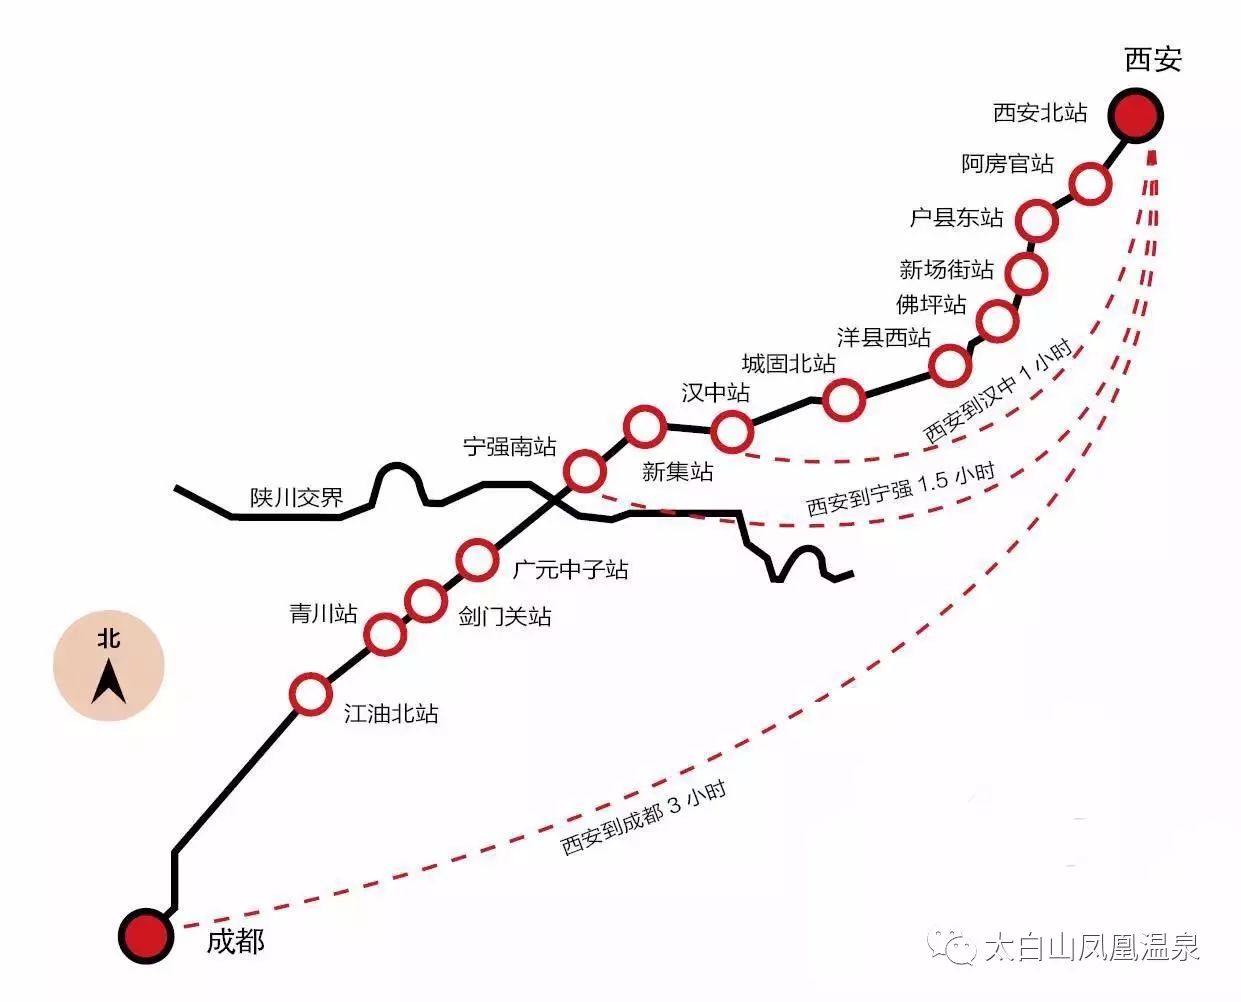 西成高铁全长658公里,运营速度为250km/h,全线设立了西安北,阿房宫